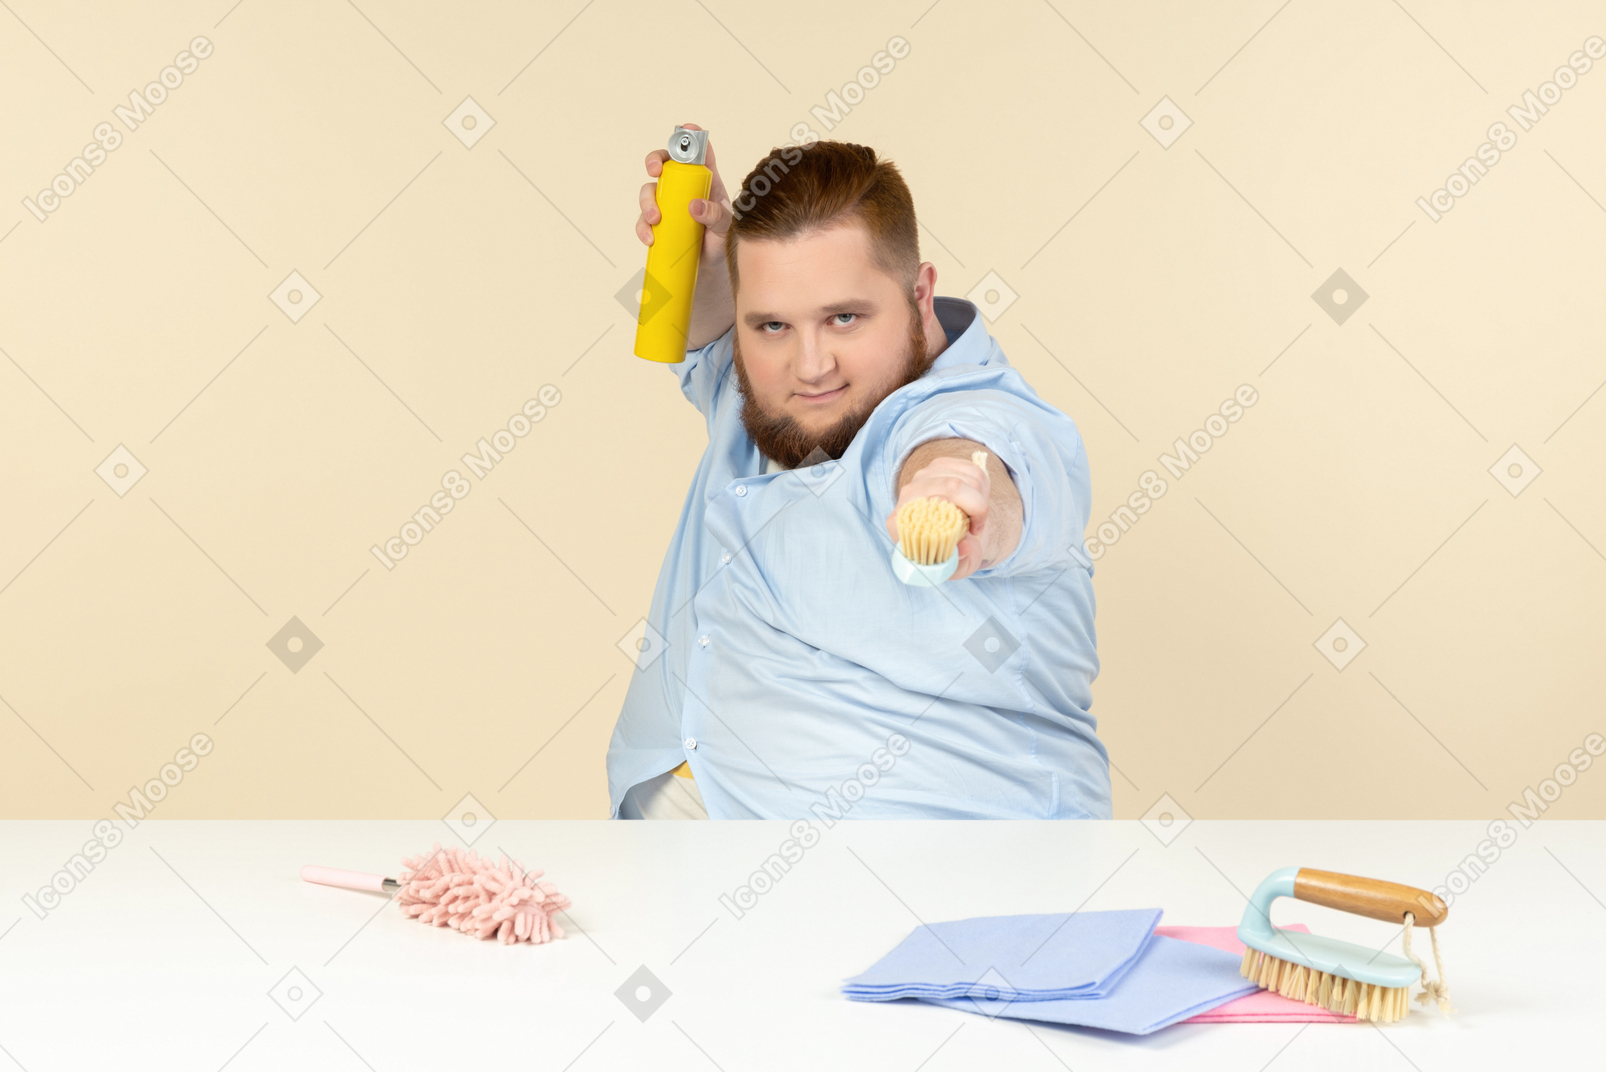 과체중인 젊은 남자가 탁자에 앉아 청소 장비를 들고 있다